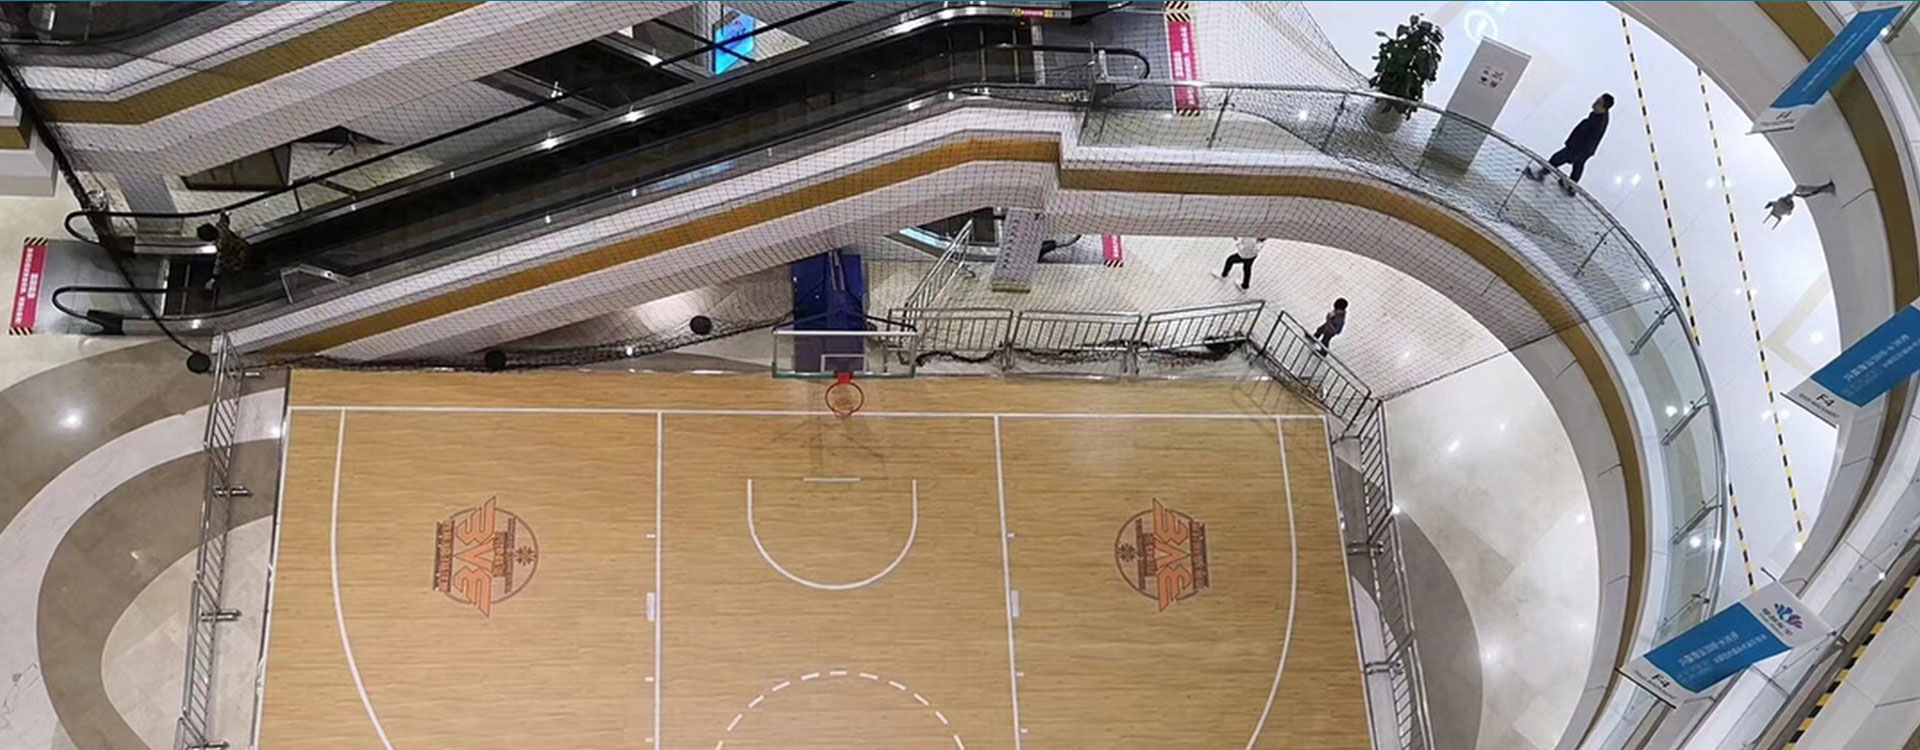 NBA Center